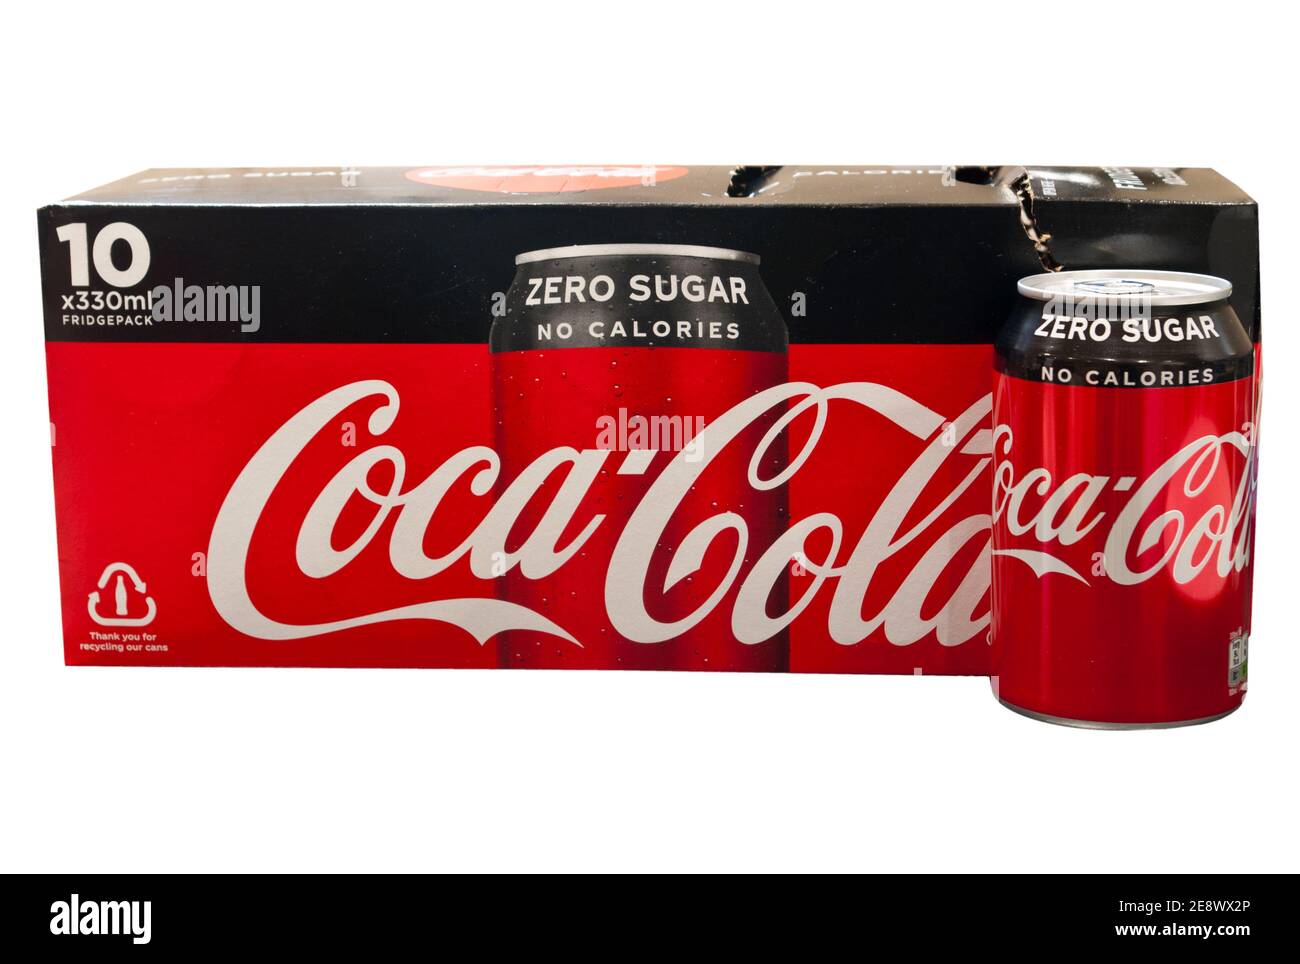 Box and Can Of Zero Sugar No Calories Coca Cola Stock Photo